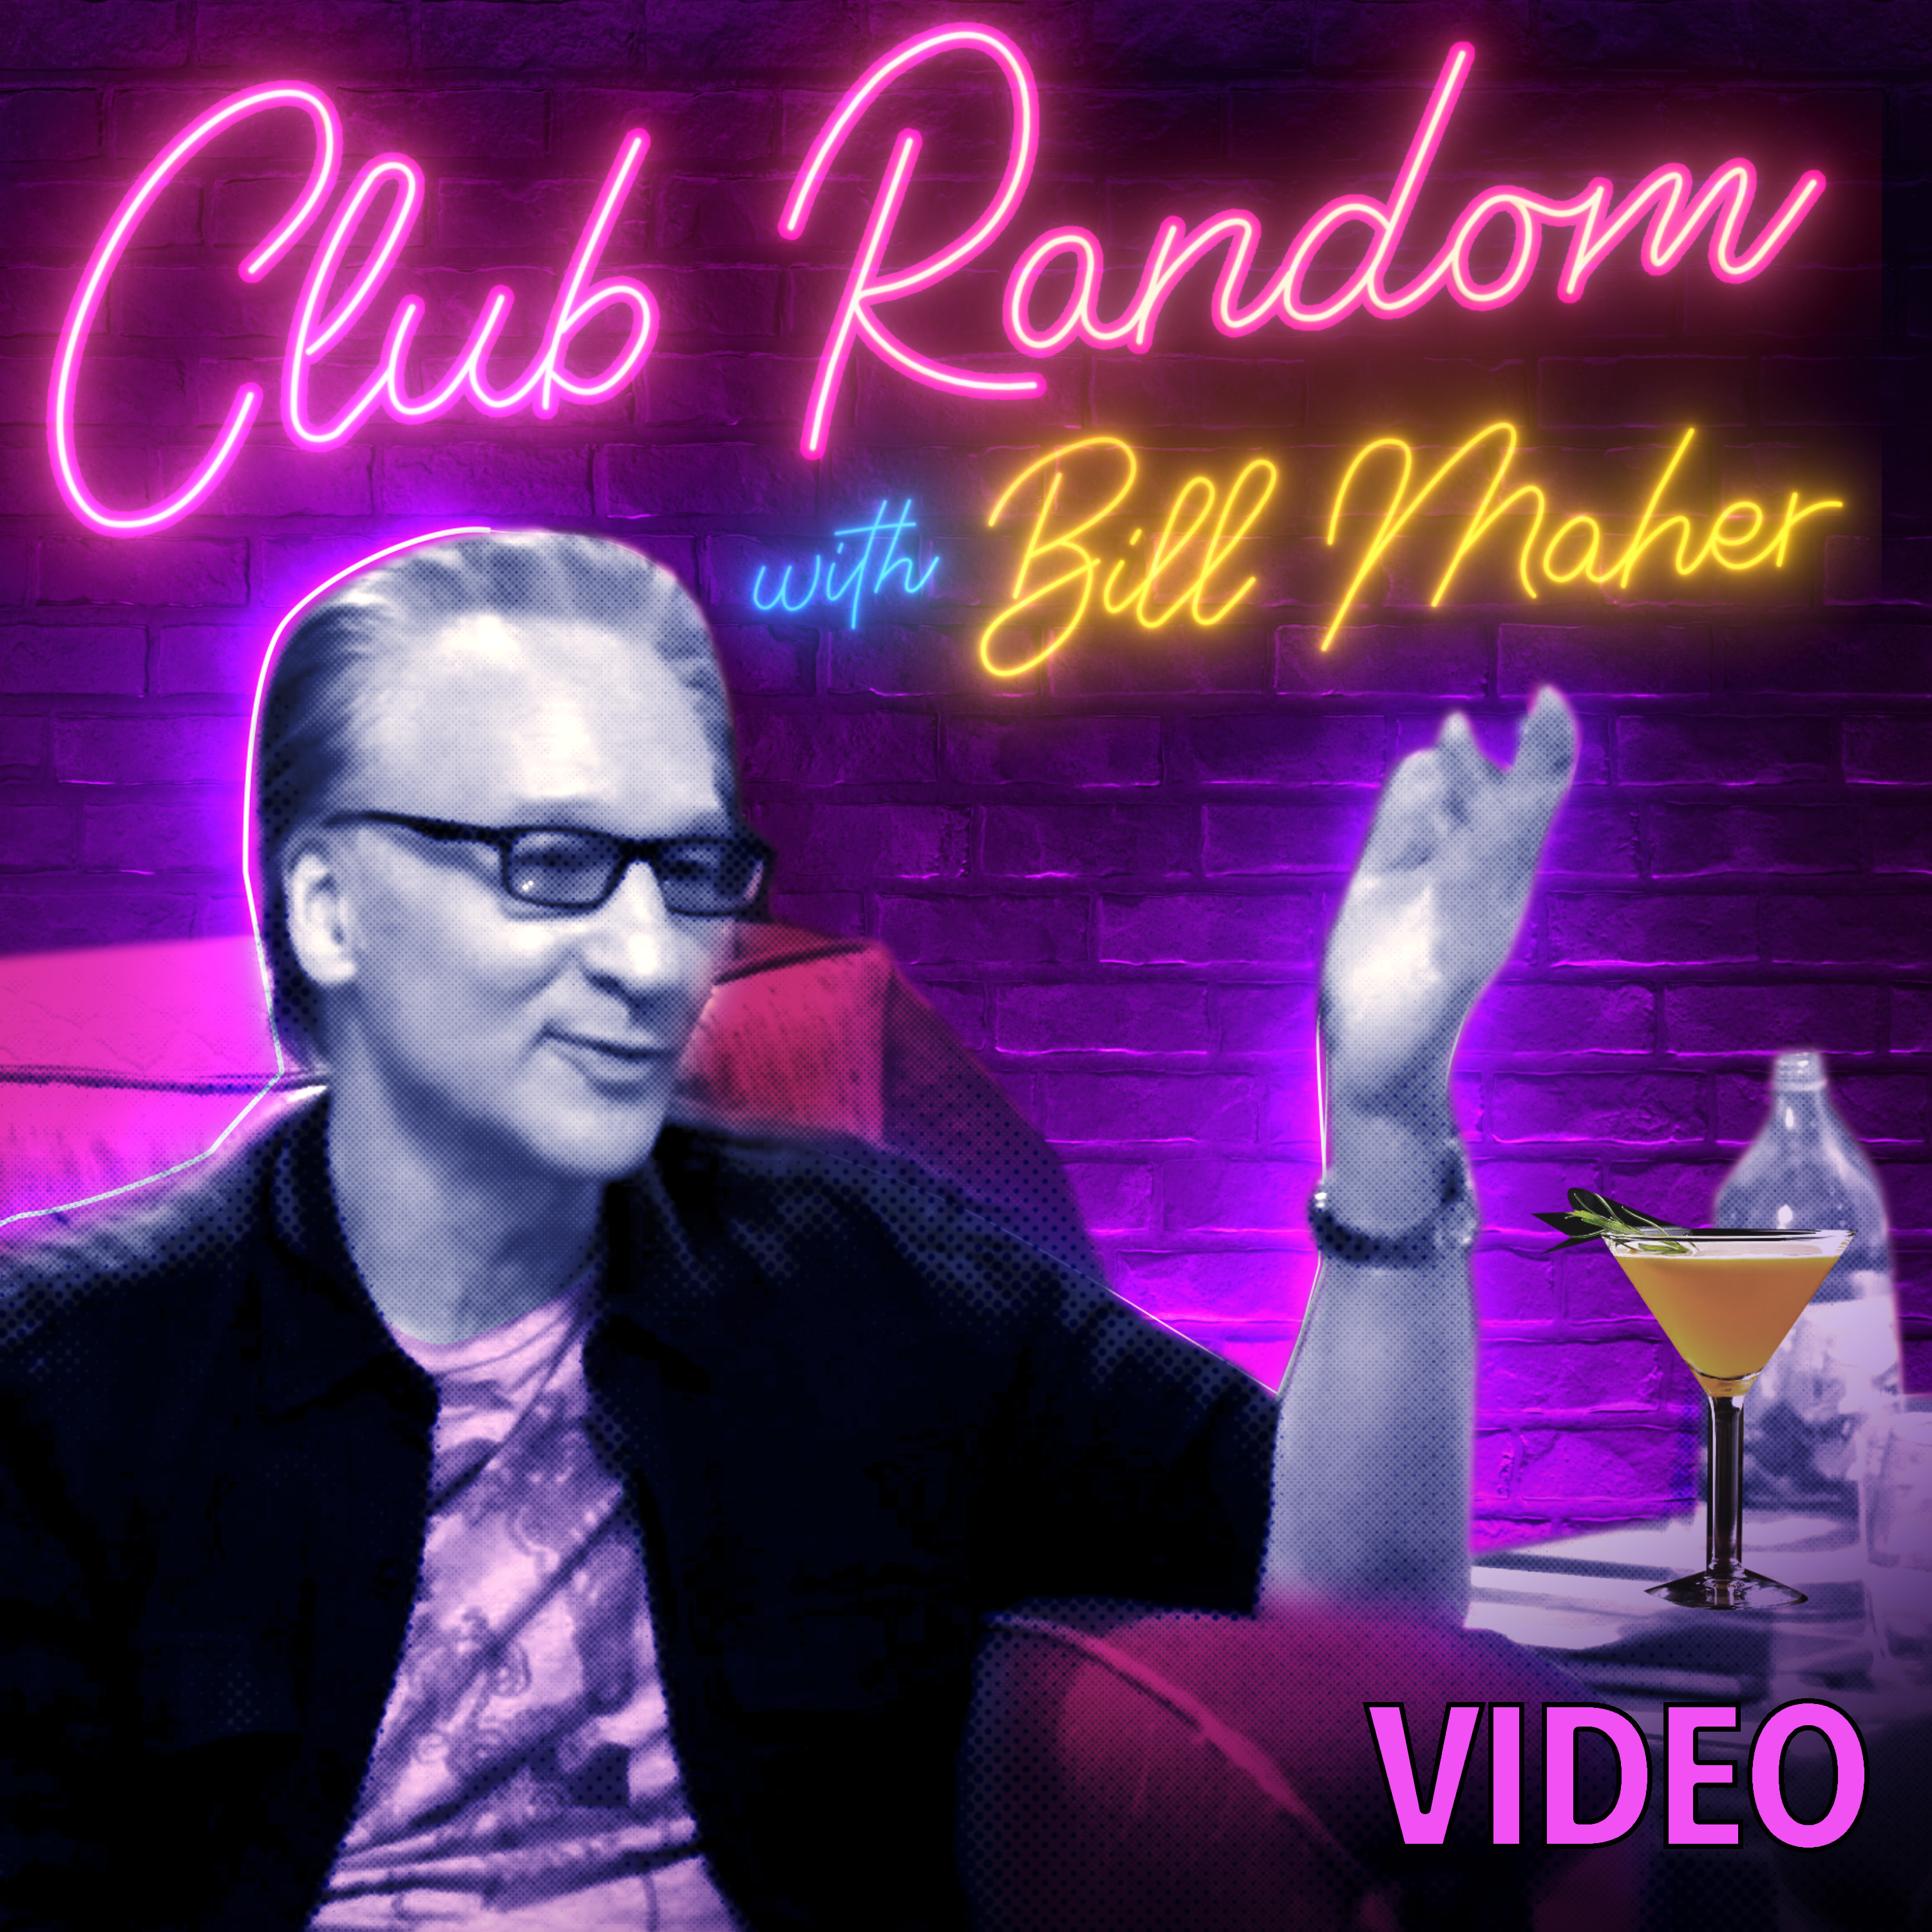 Video: Jim Gaffigan | Club Random with Bill Maher